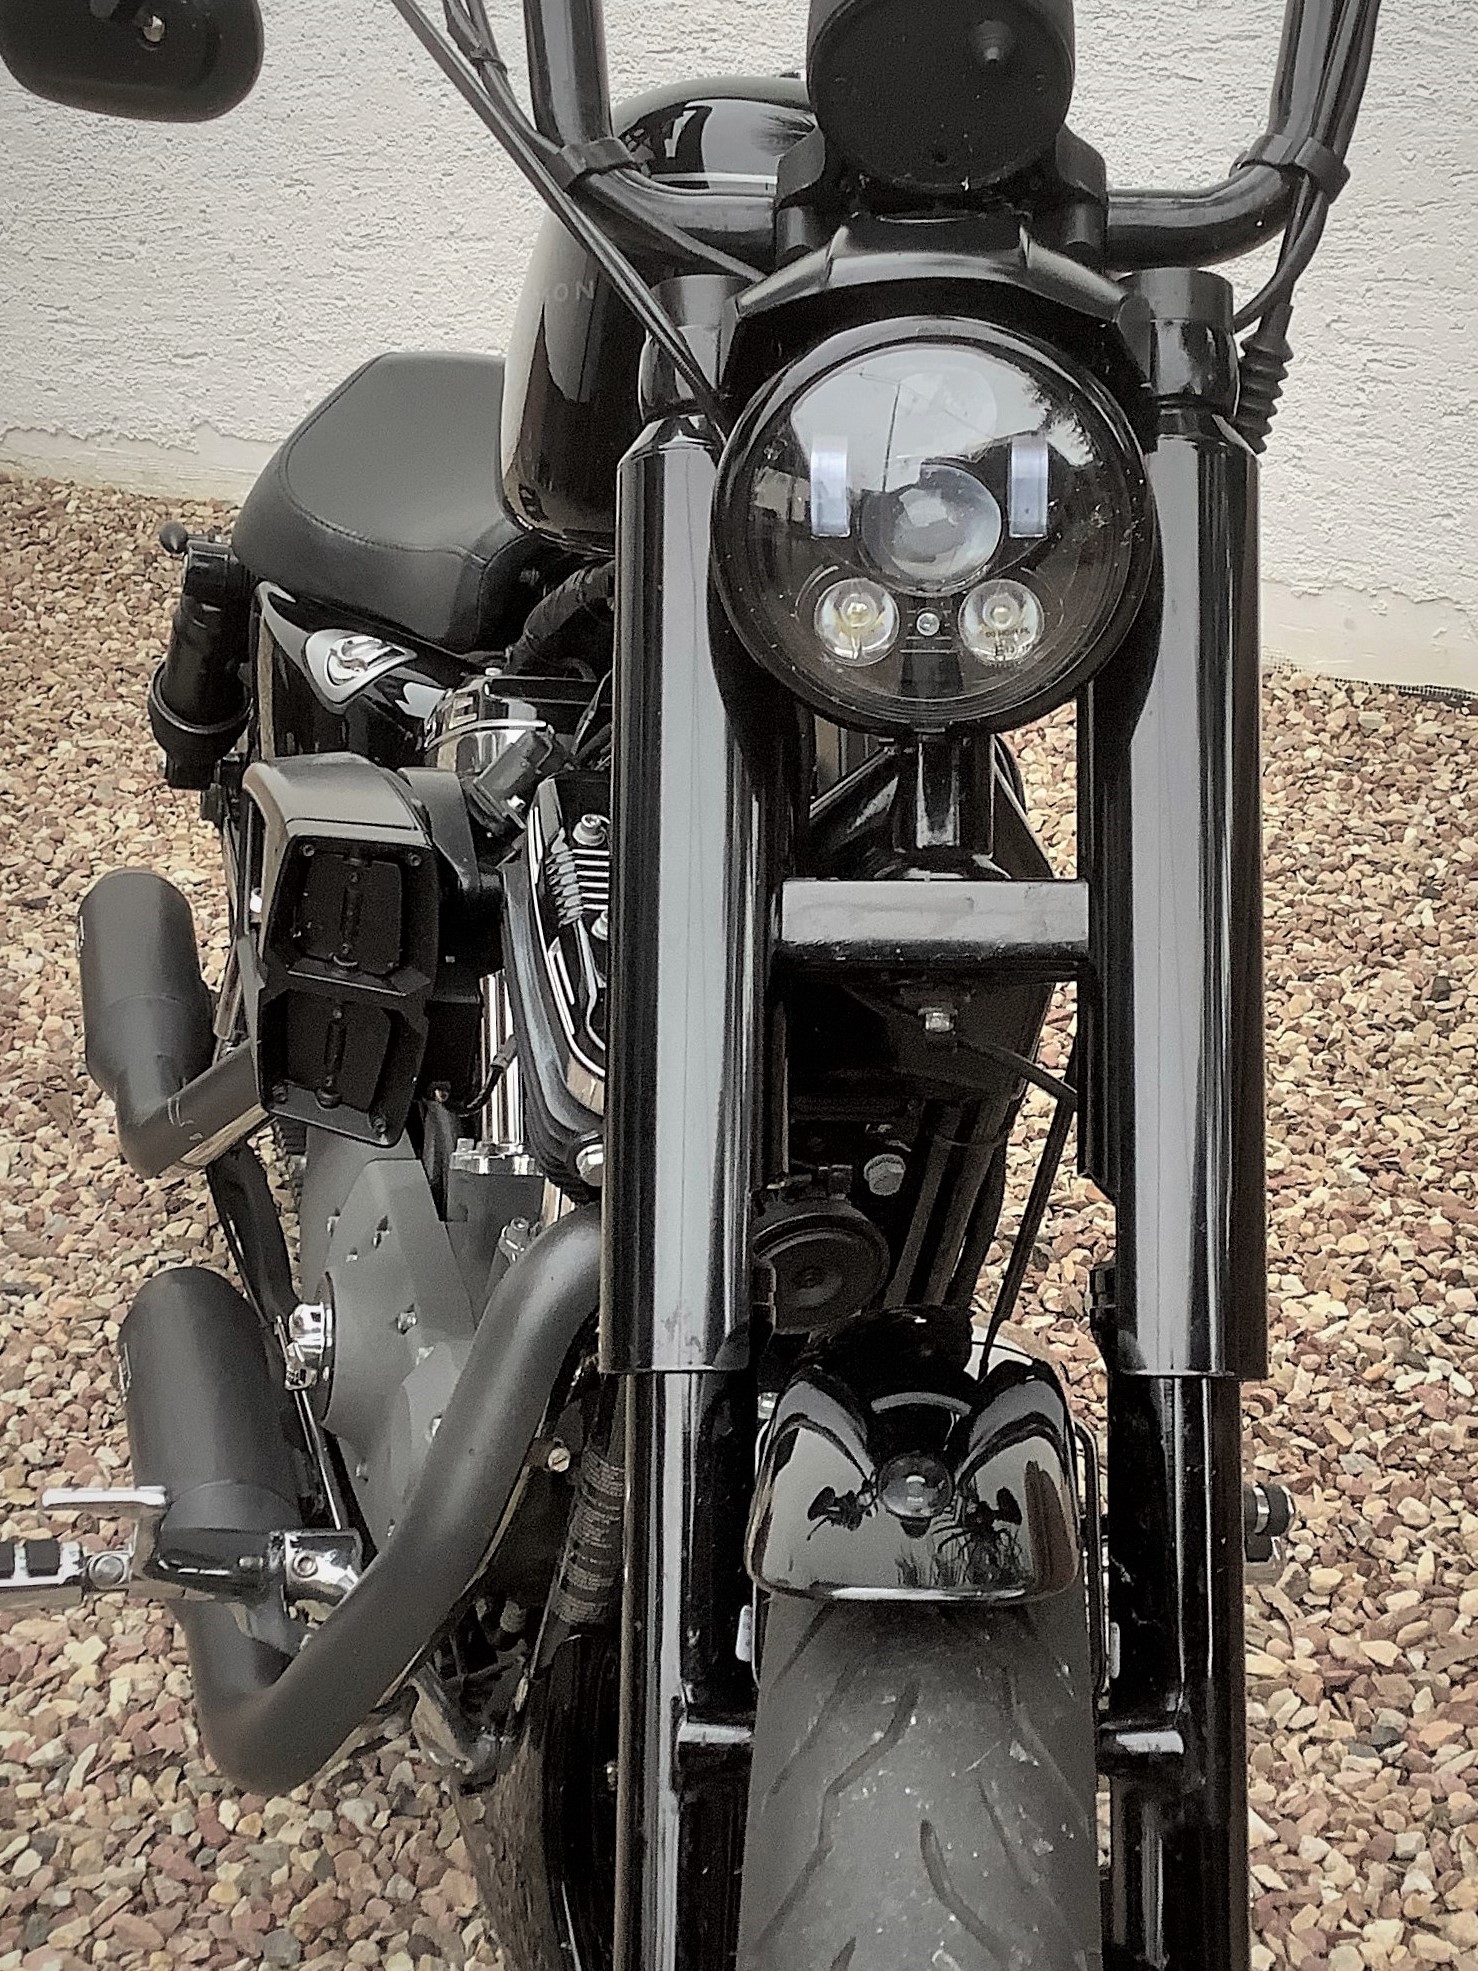 39mm Gabelrohr Gabel Cover Stoßdämpfer Abdeckung Für Harley Sportster XL883  1200